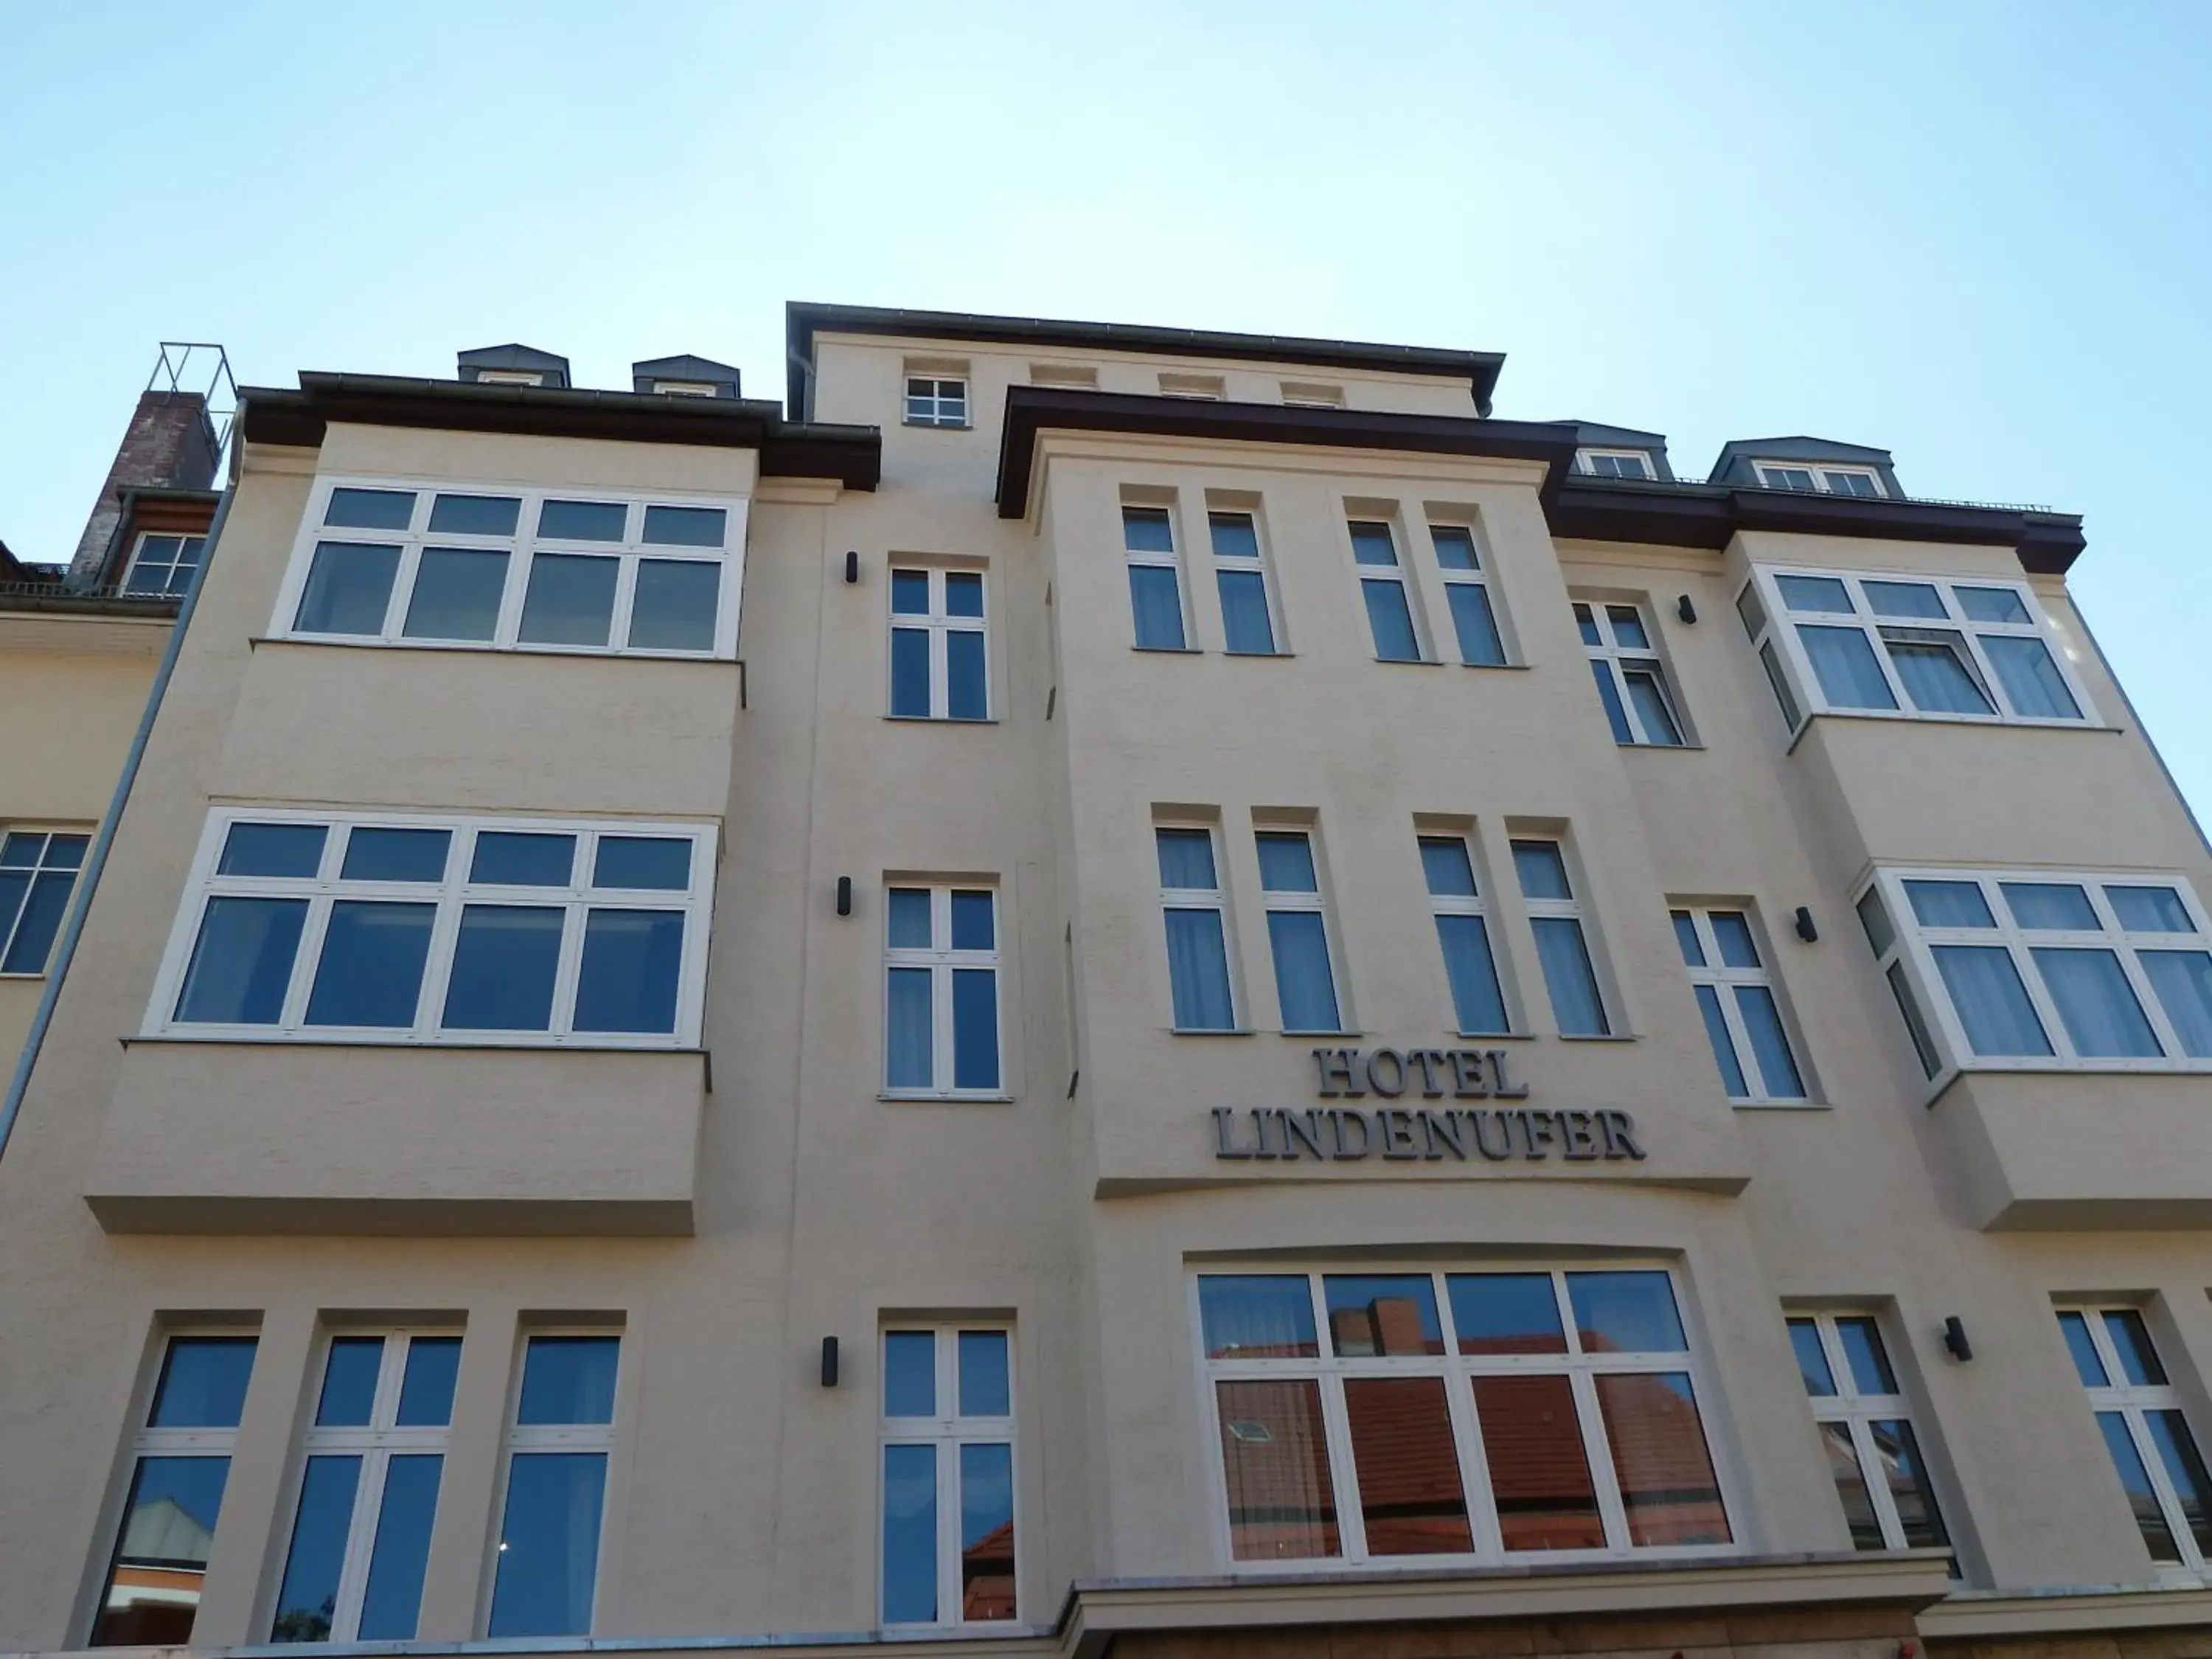 Property Building in Hotel Lindenufer